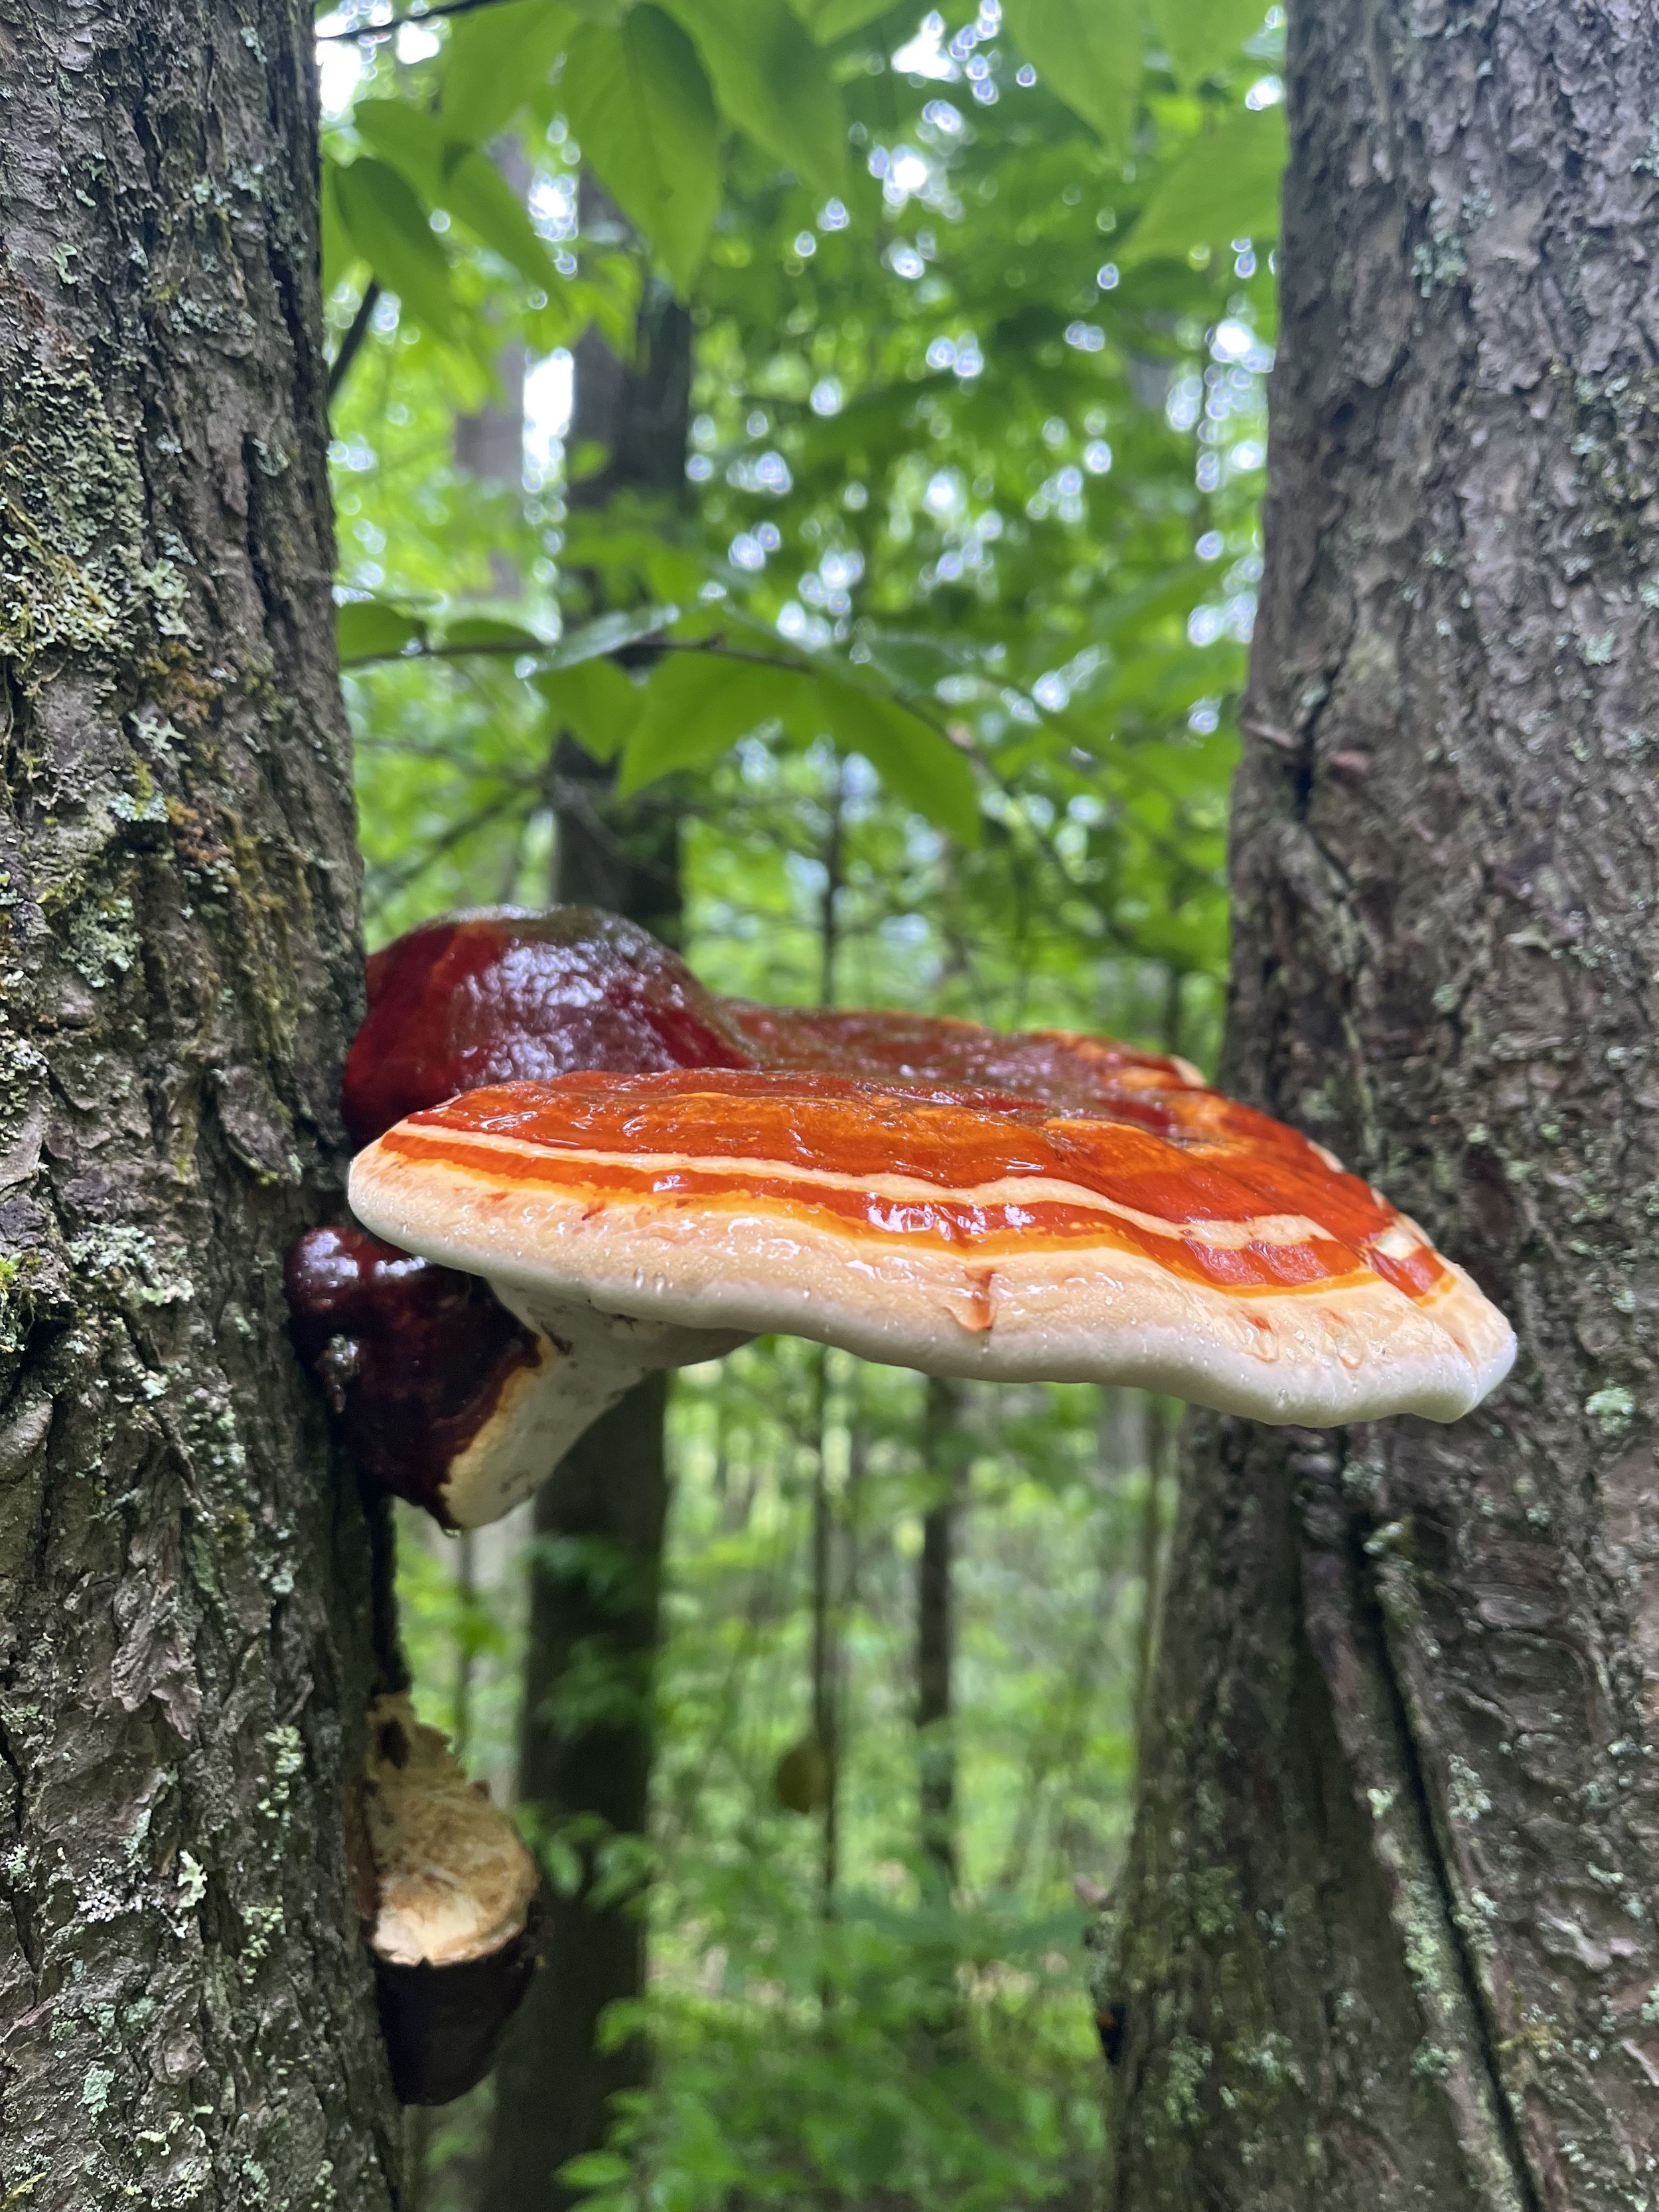 Dennis Cove Appalachian Trail Fungi.jpg